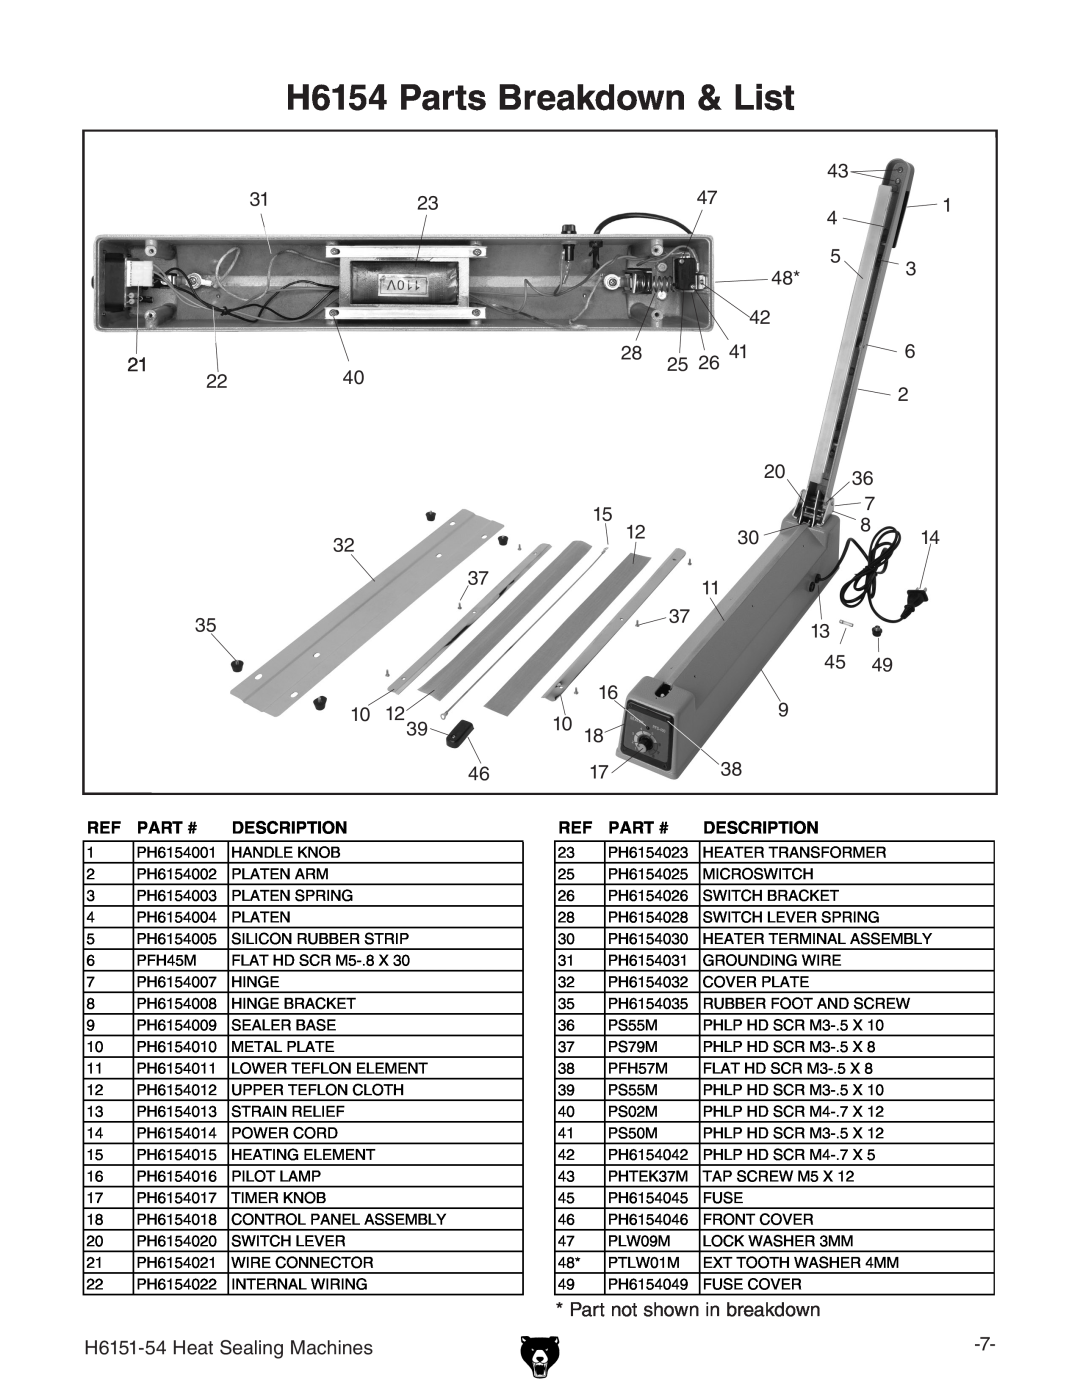 Grizzly H6151-54 specifications H6154 Parts Breakdown & List, Part #, Description 